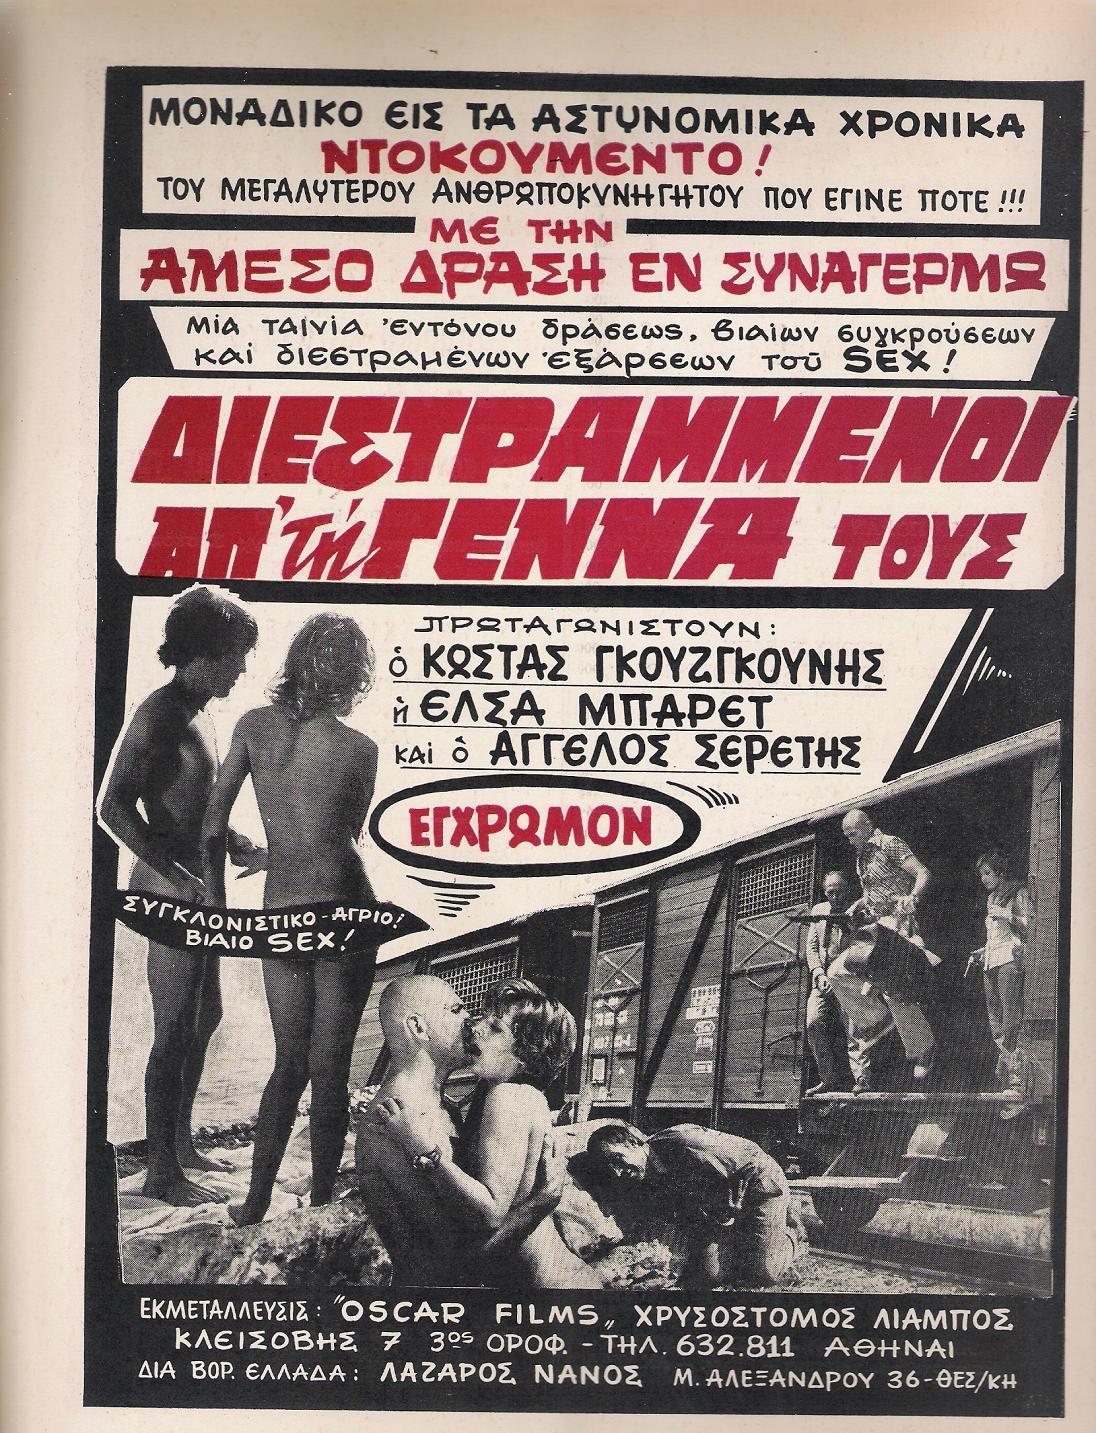 Diestrammenoi apo tin genna tous (1974) Screenshot 1 